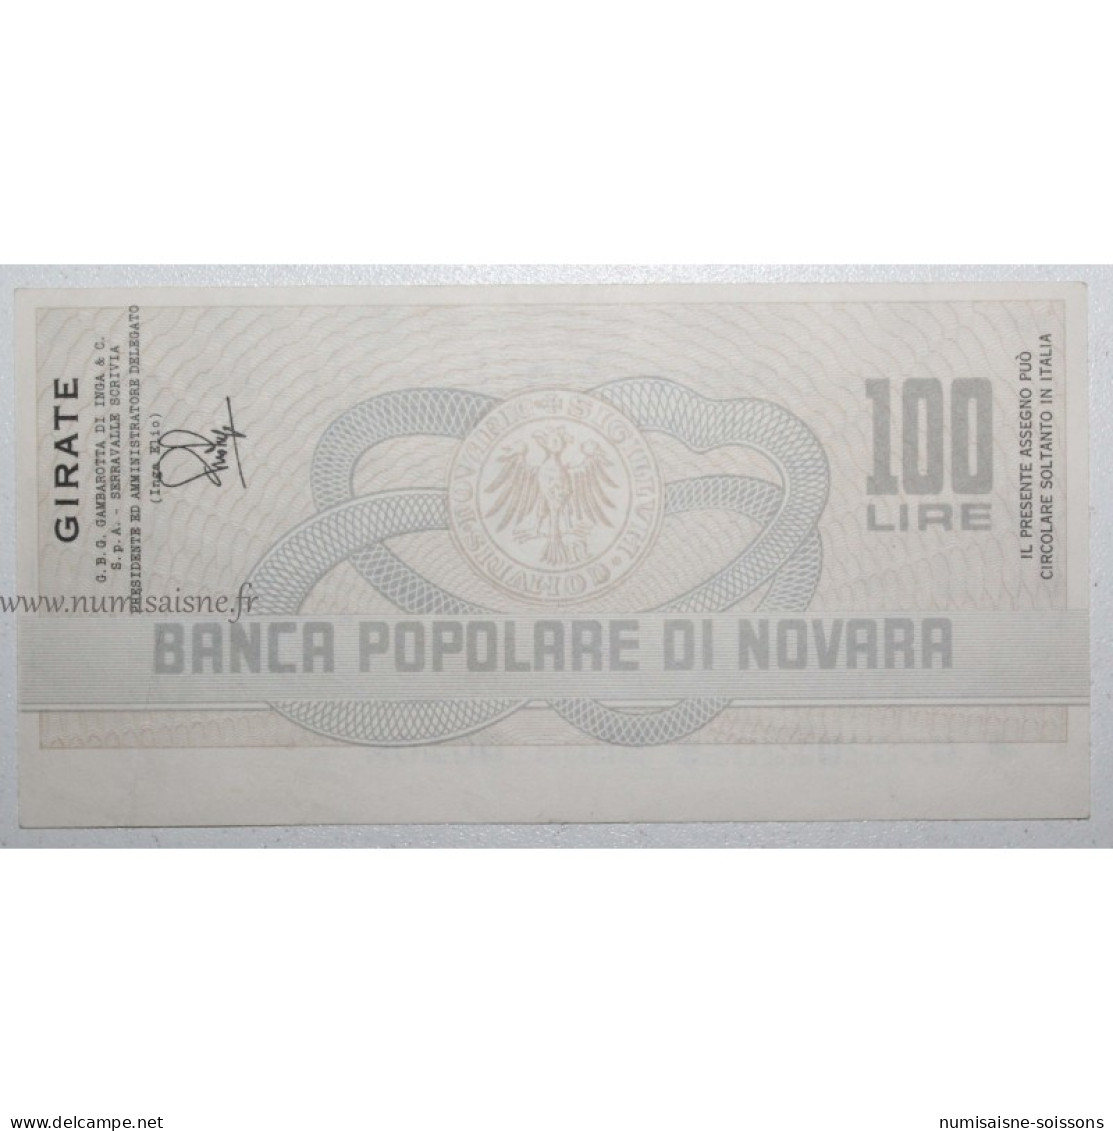 ITALIE - PICK G 1283 - 100 LIRE 1977 - Banca Popolare Di Novara - SUP - 100 Lire